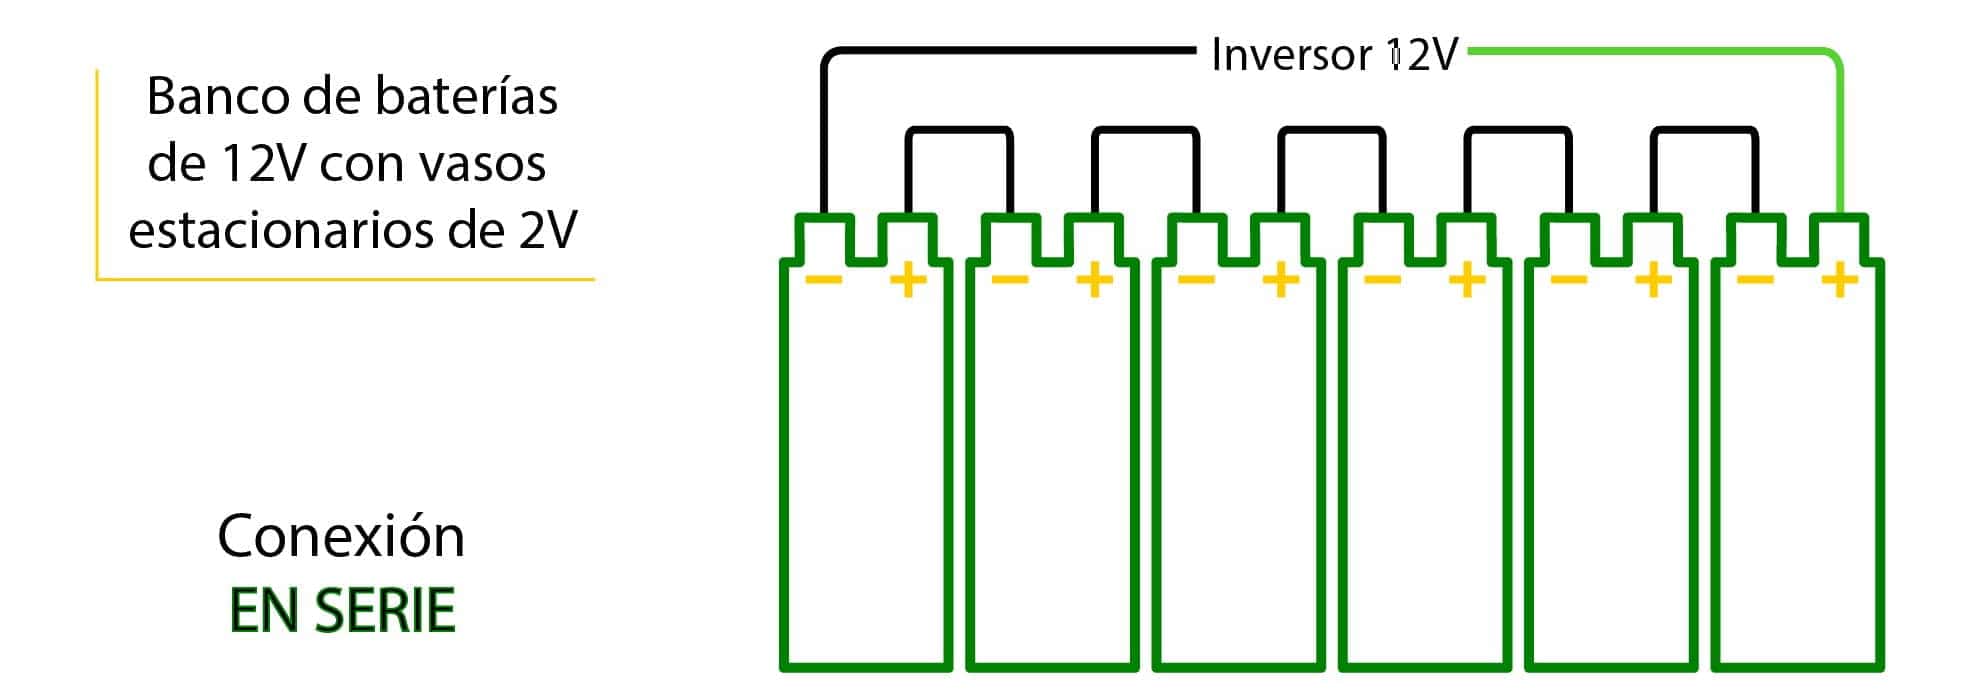 Conexión de vasos de 2V para conseguir banco de baterías de 12V